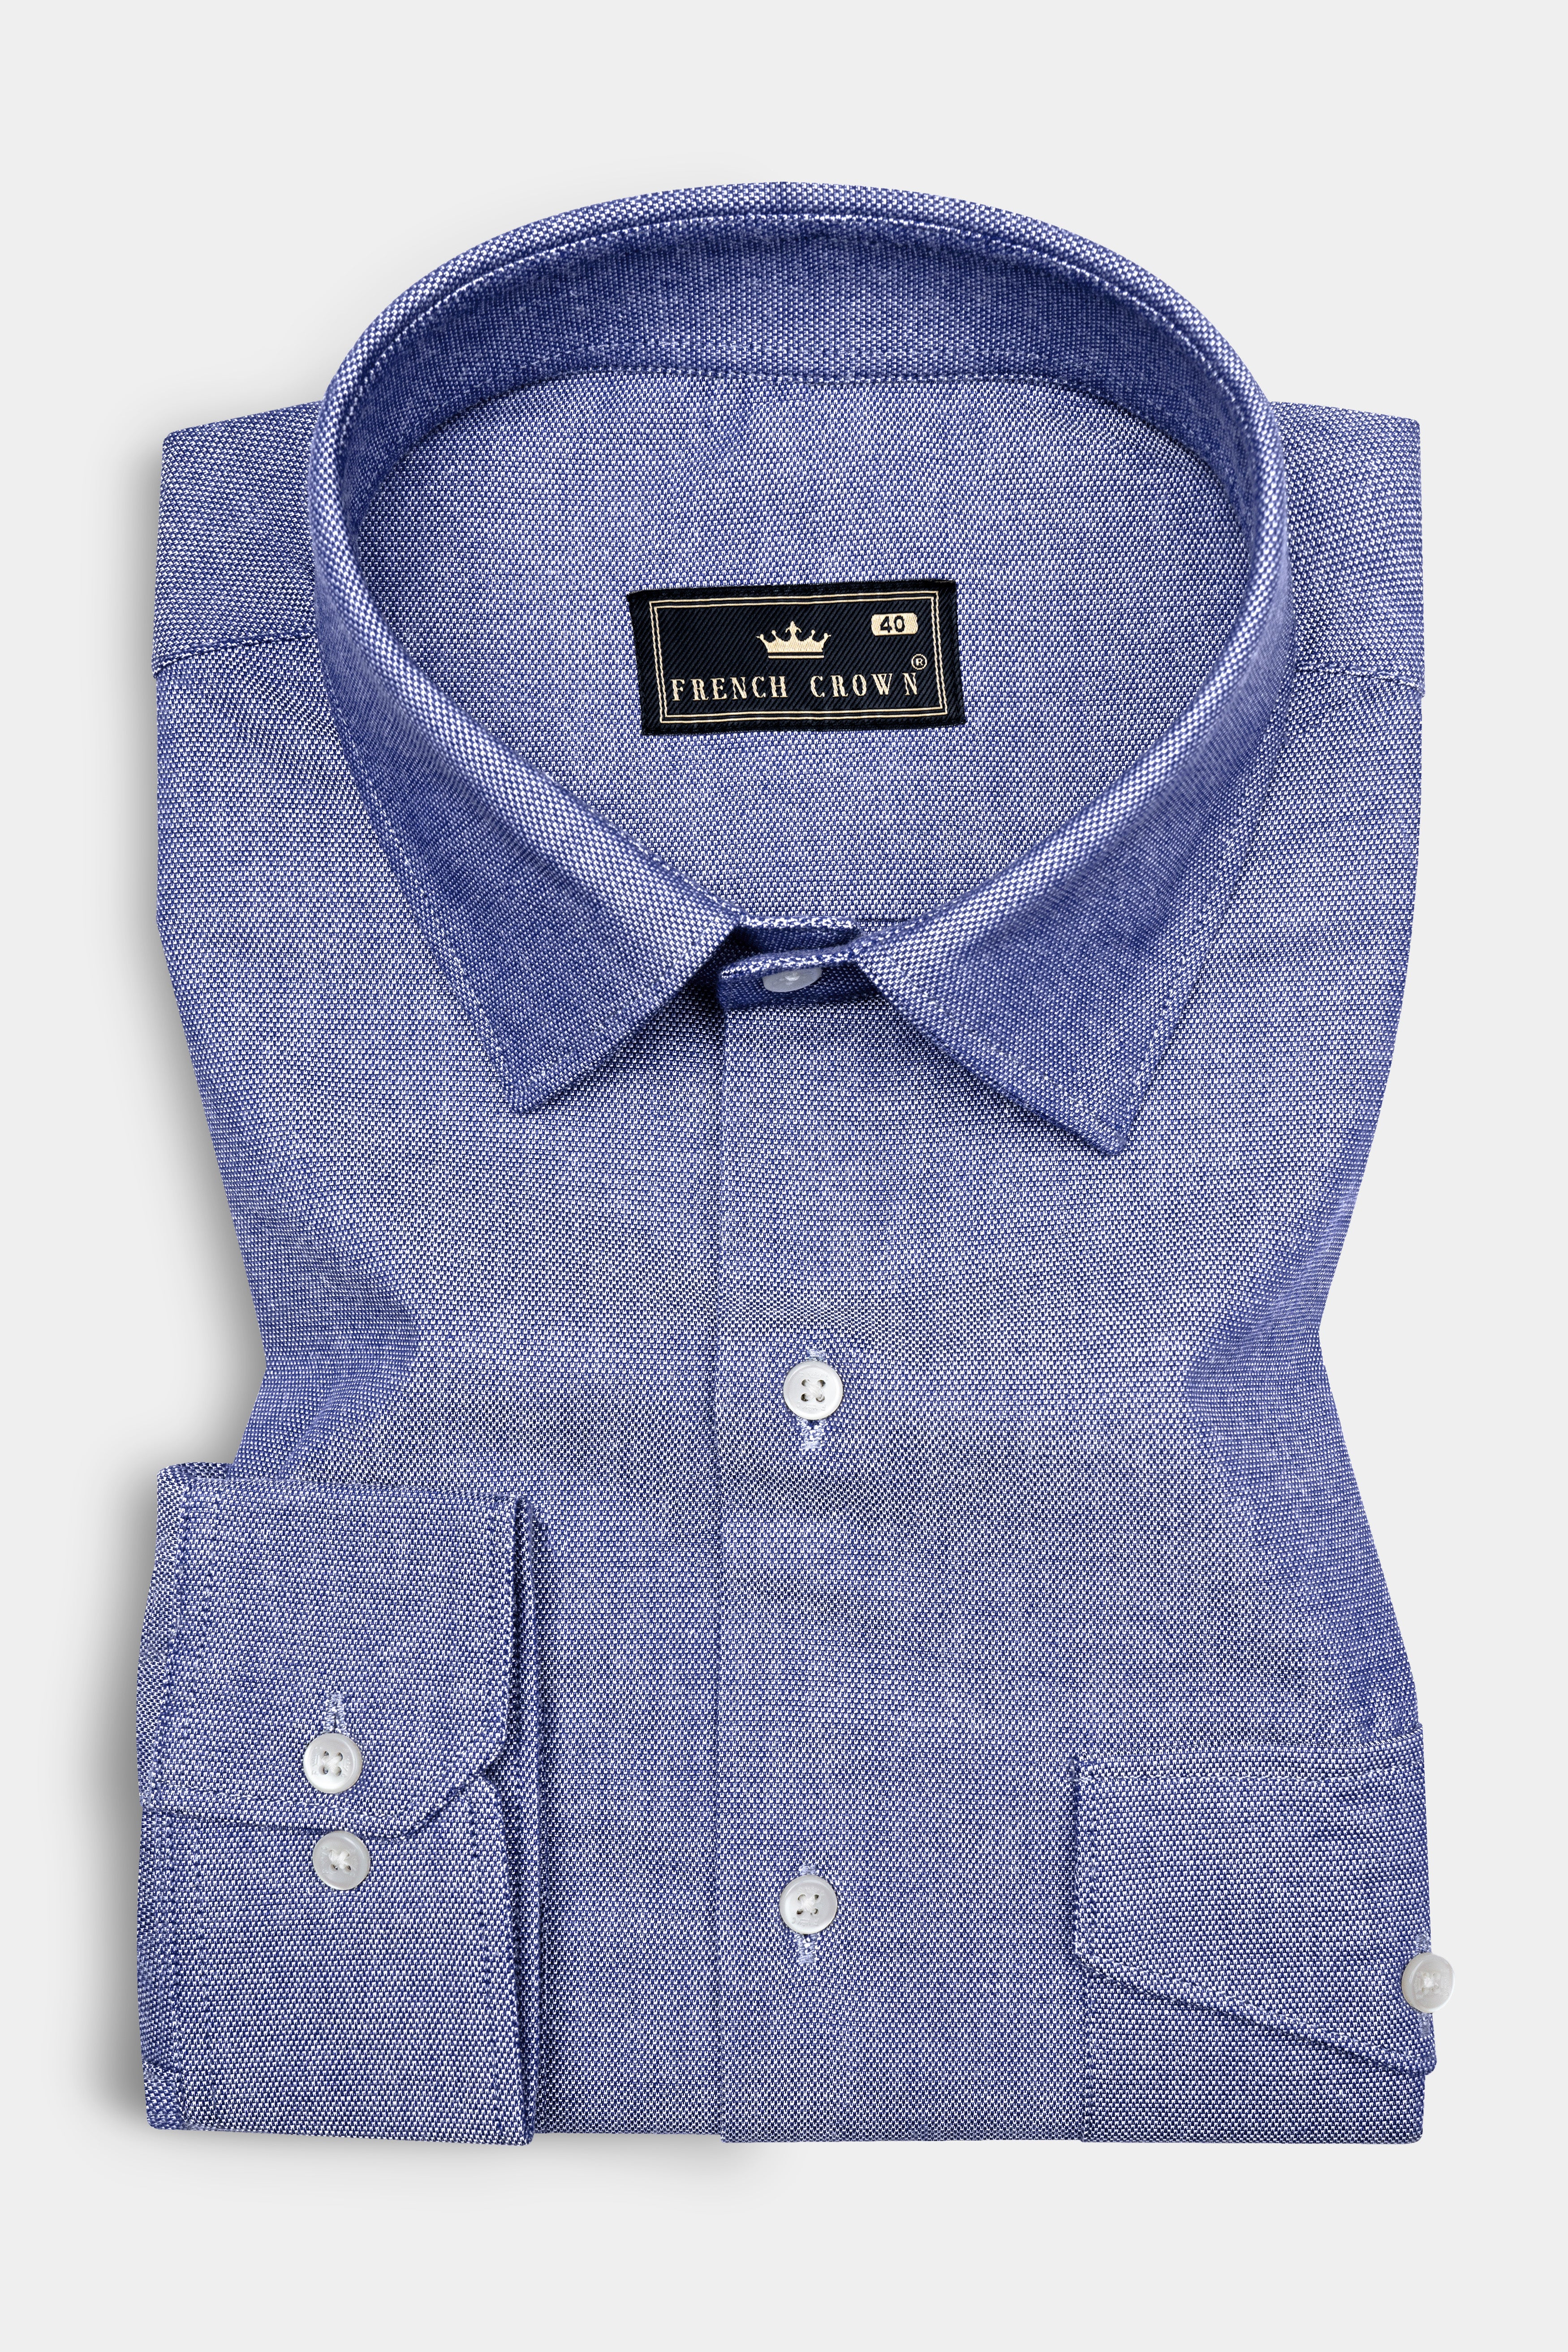 Marguerite Blue Royal Oxford Cotton Shirt